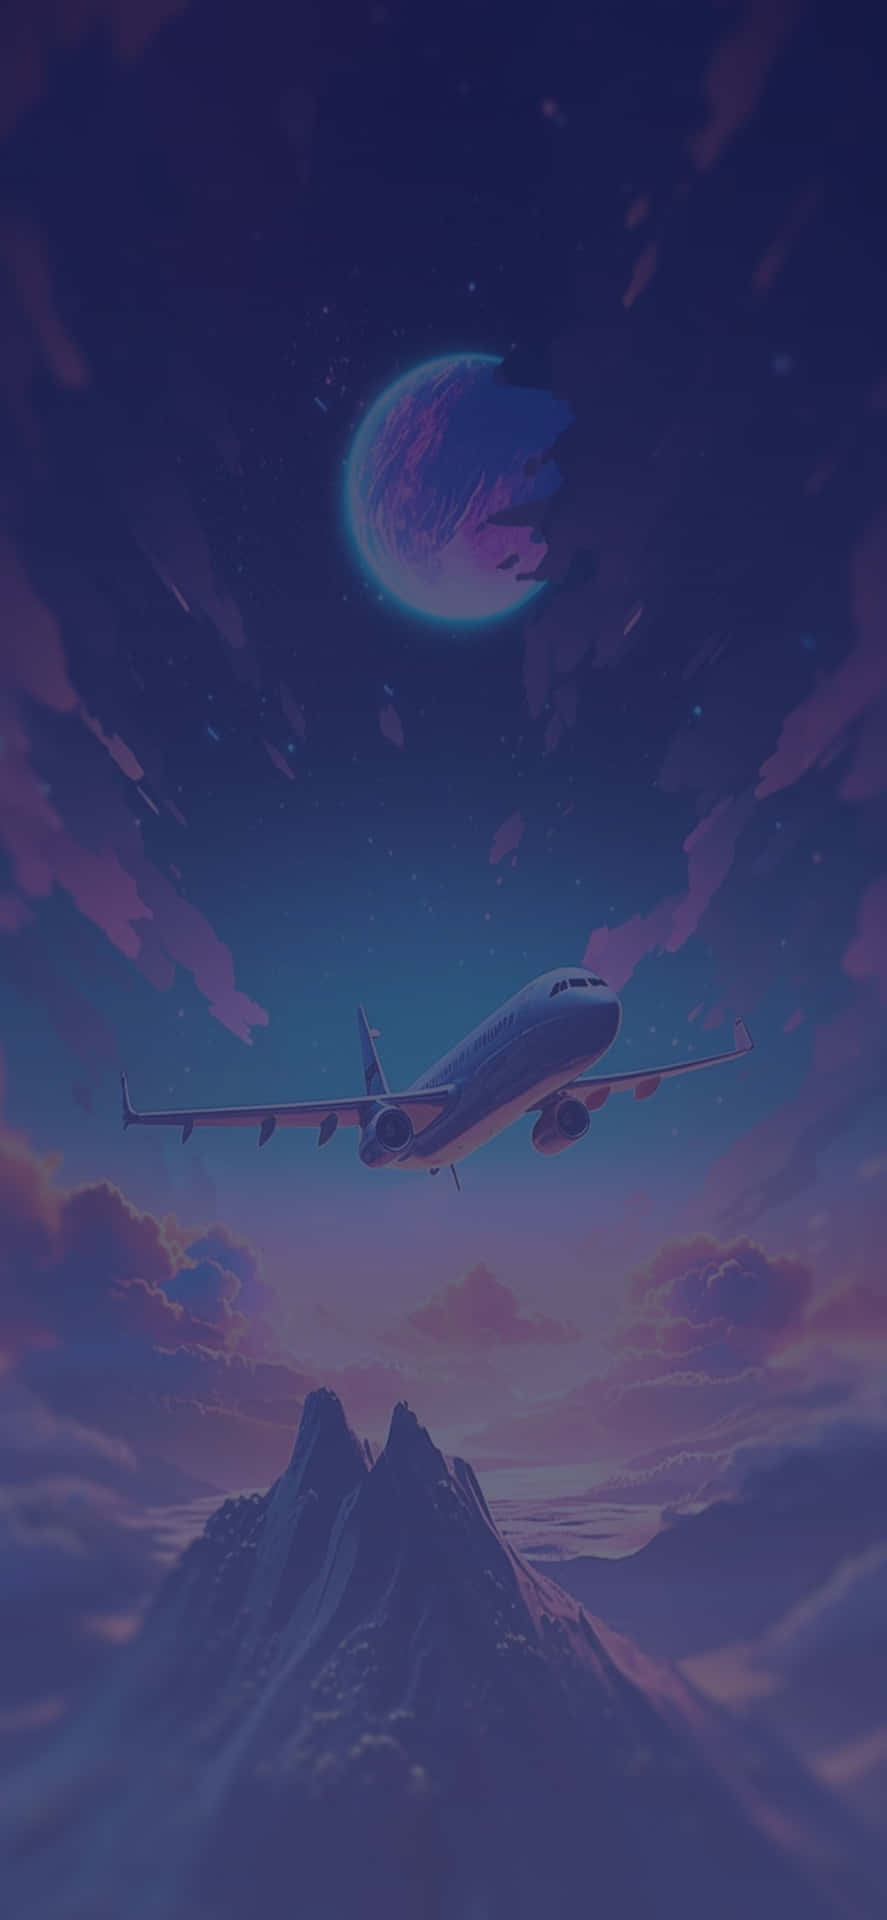 Fantasy Flight Over Mountains.jpg Wallpaper